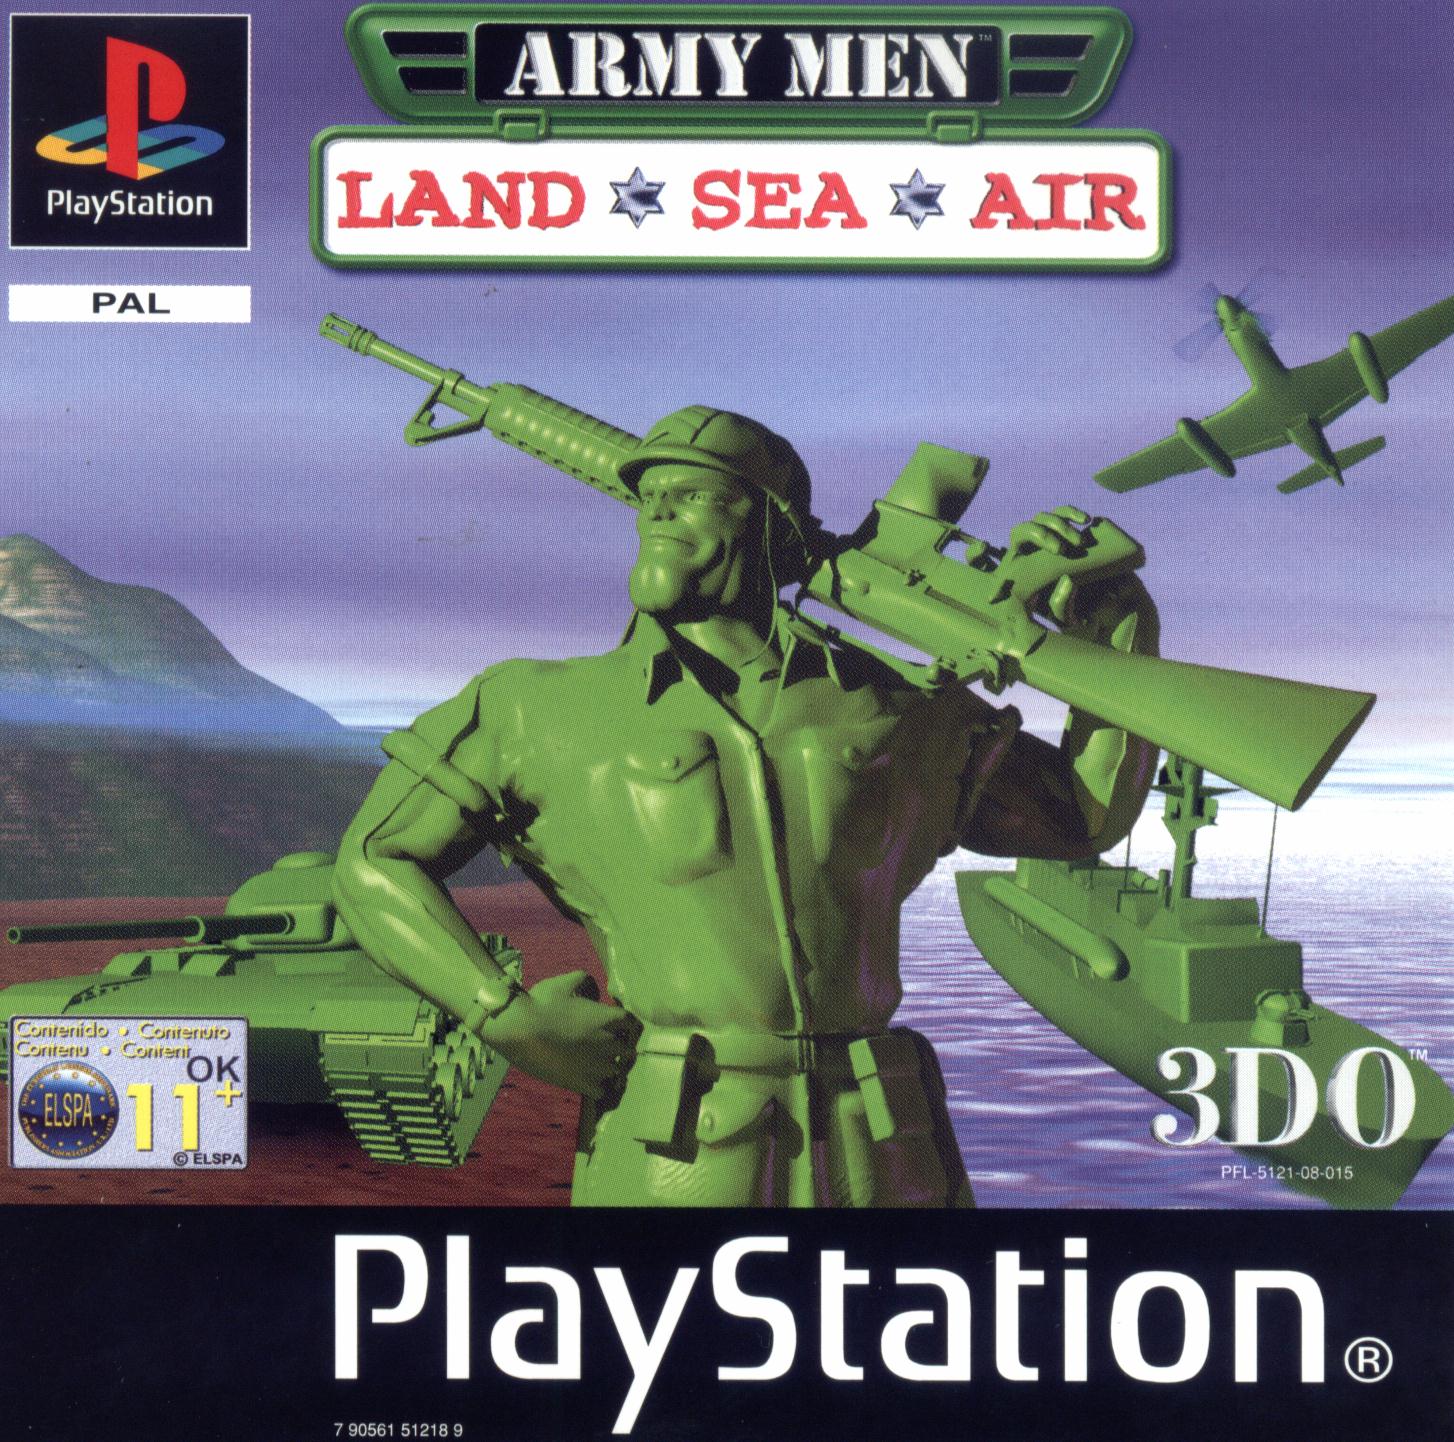 jaquette du jeu vidéo Army Men : Land Sea Air